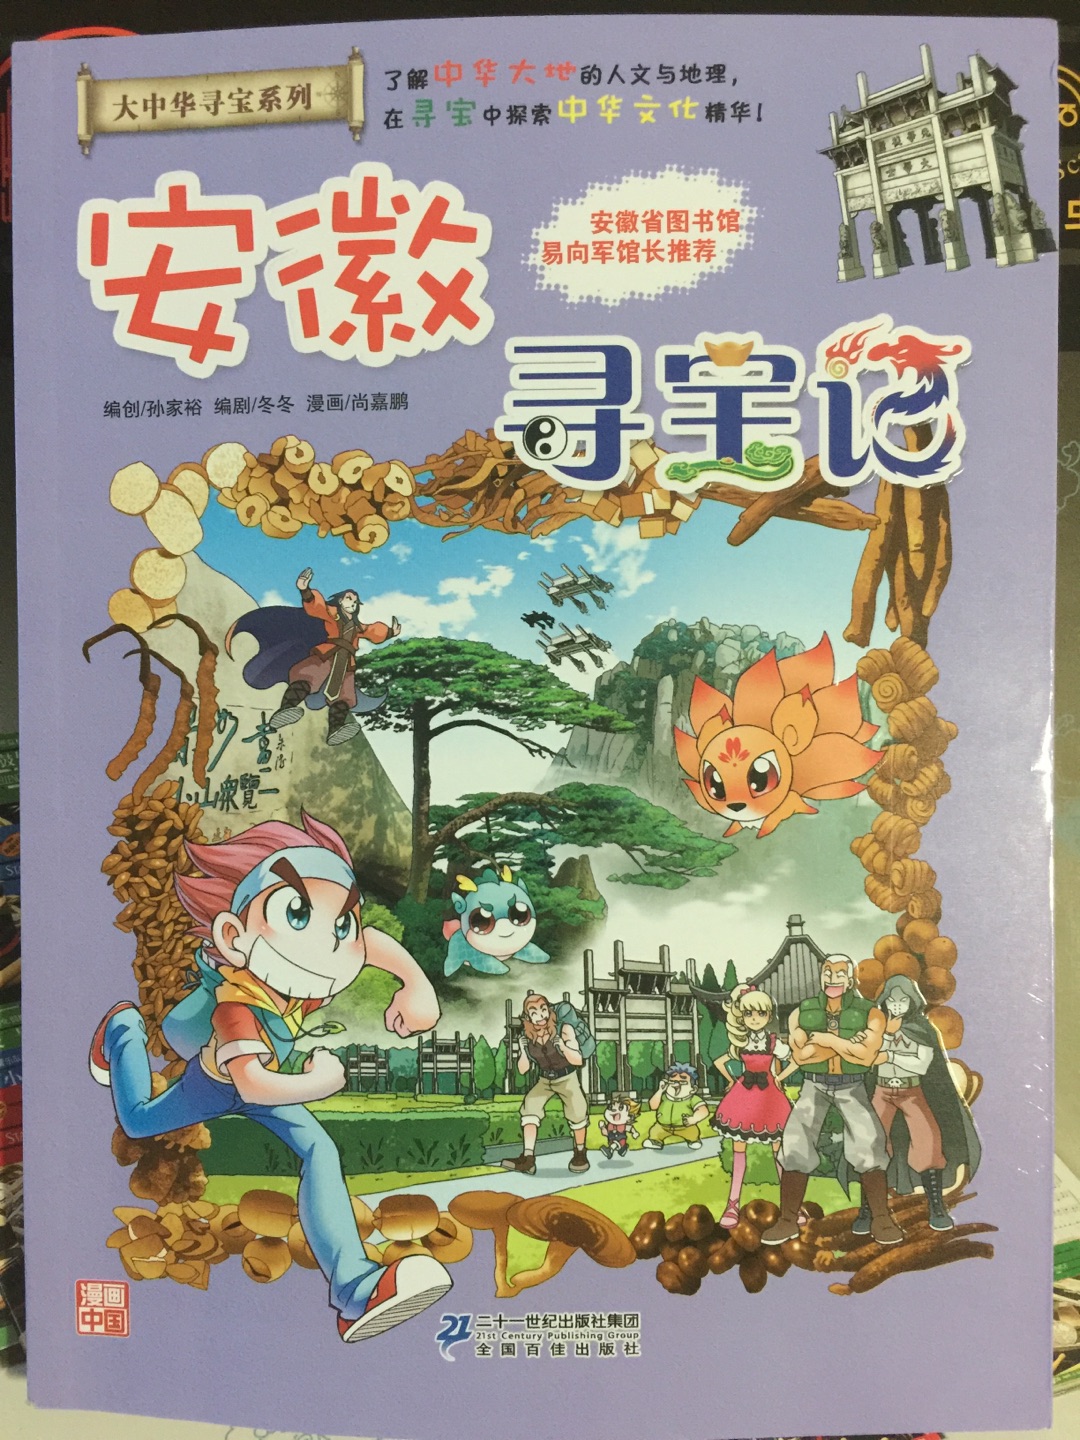 孩子指定要买的，最近喜欢上了大中华寻宝系列书。